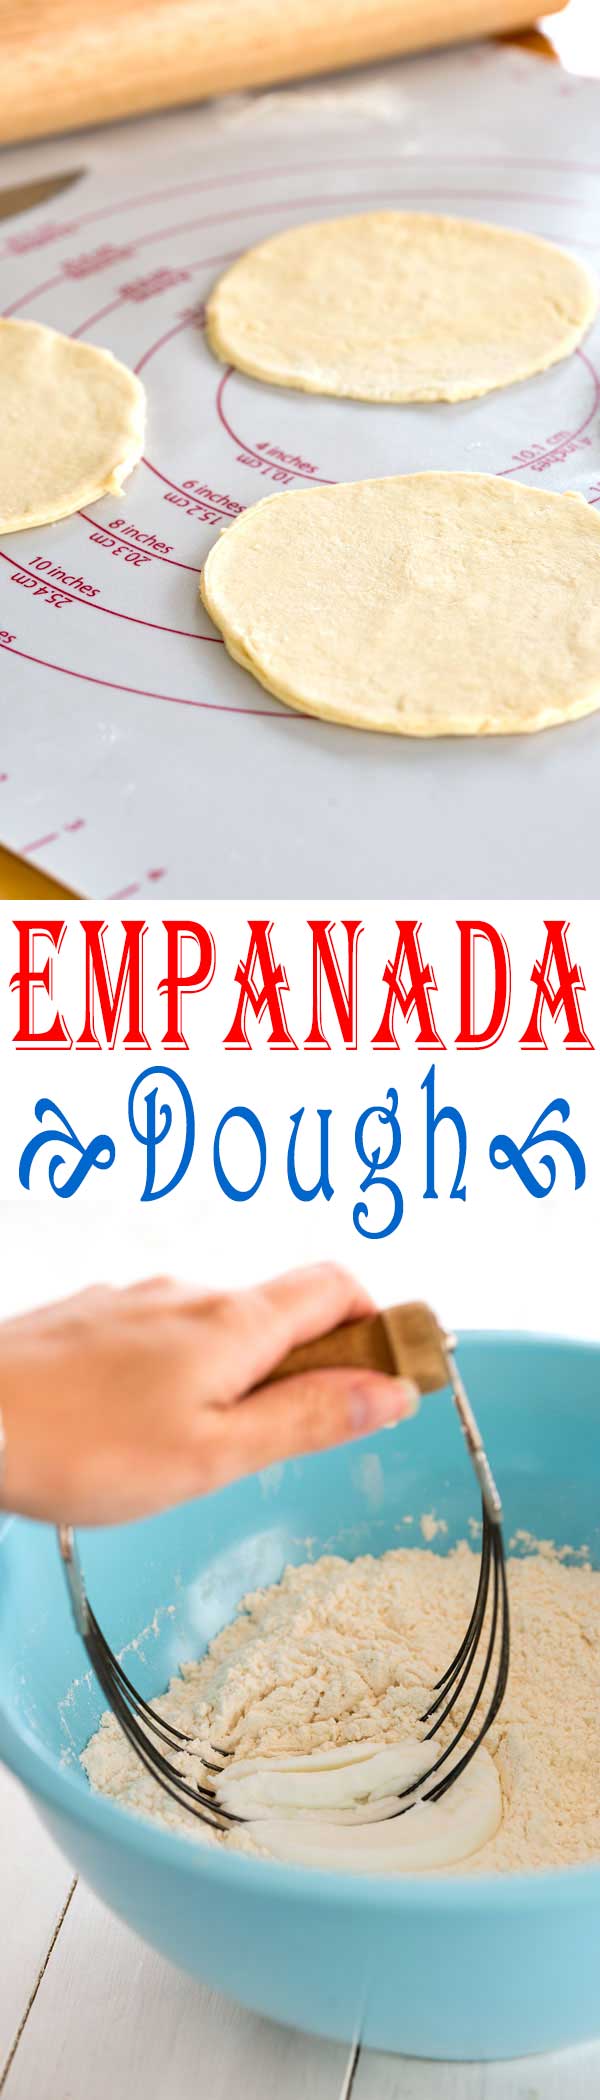 Make empanadas at home from scratch with this easy empanada dough recipe!